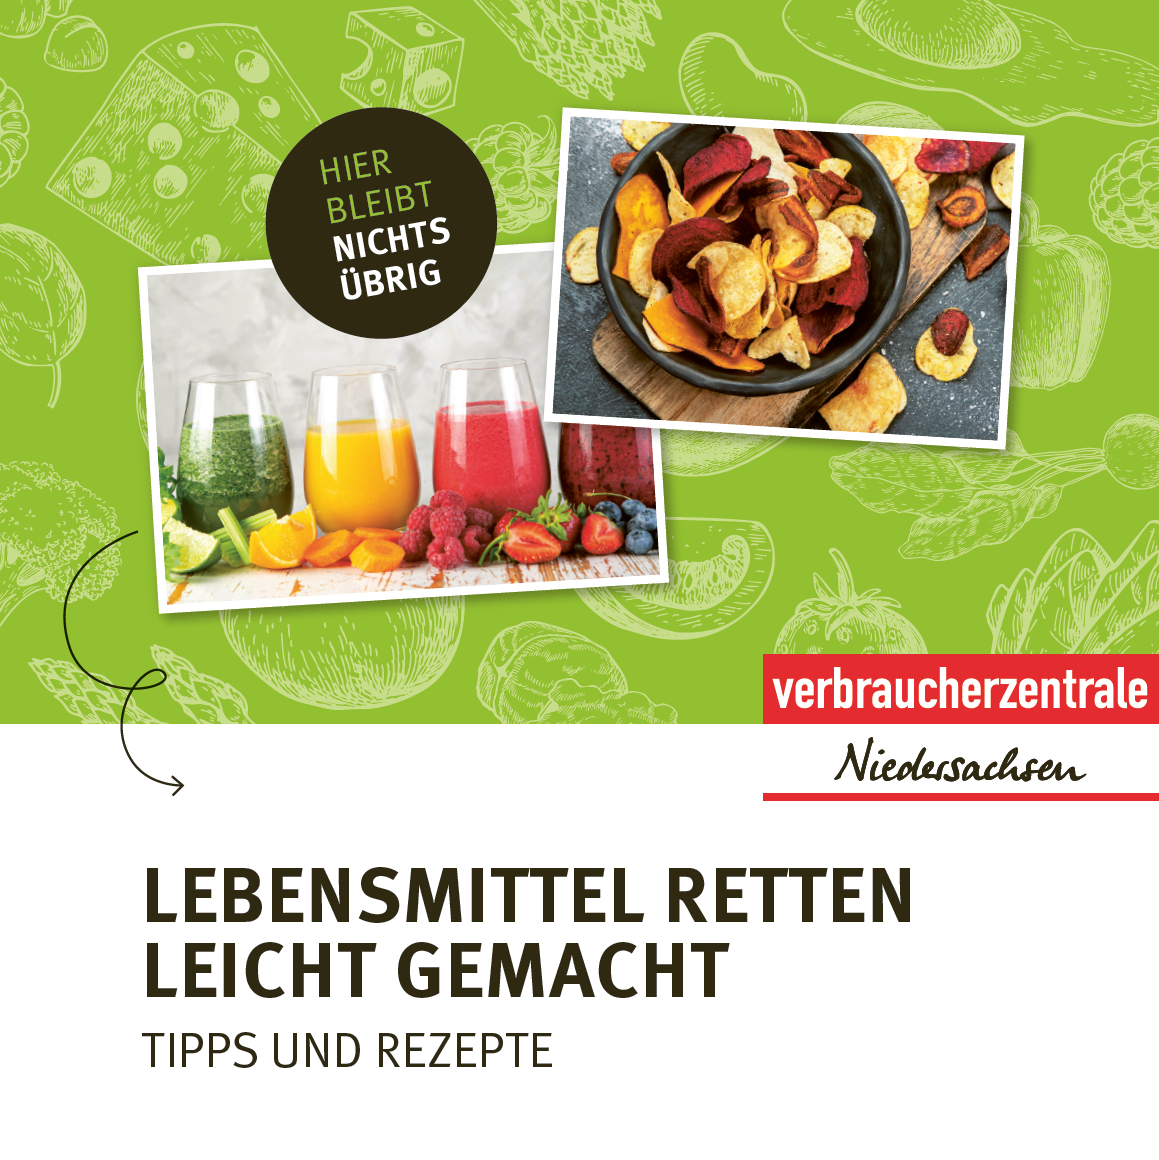 Cover der Broschüre "Lebensmittel retten leicht gemacht"